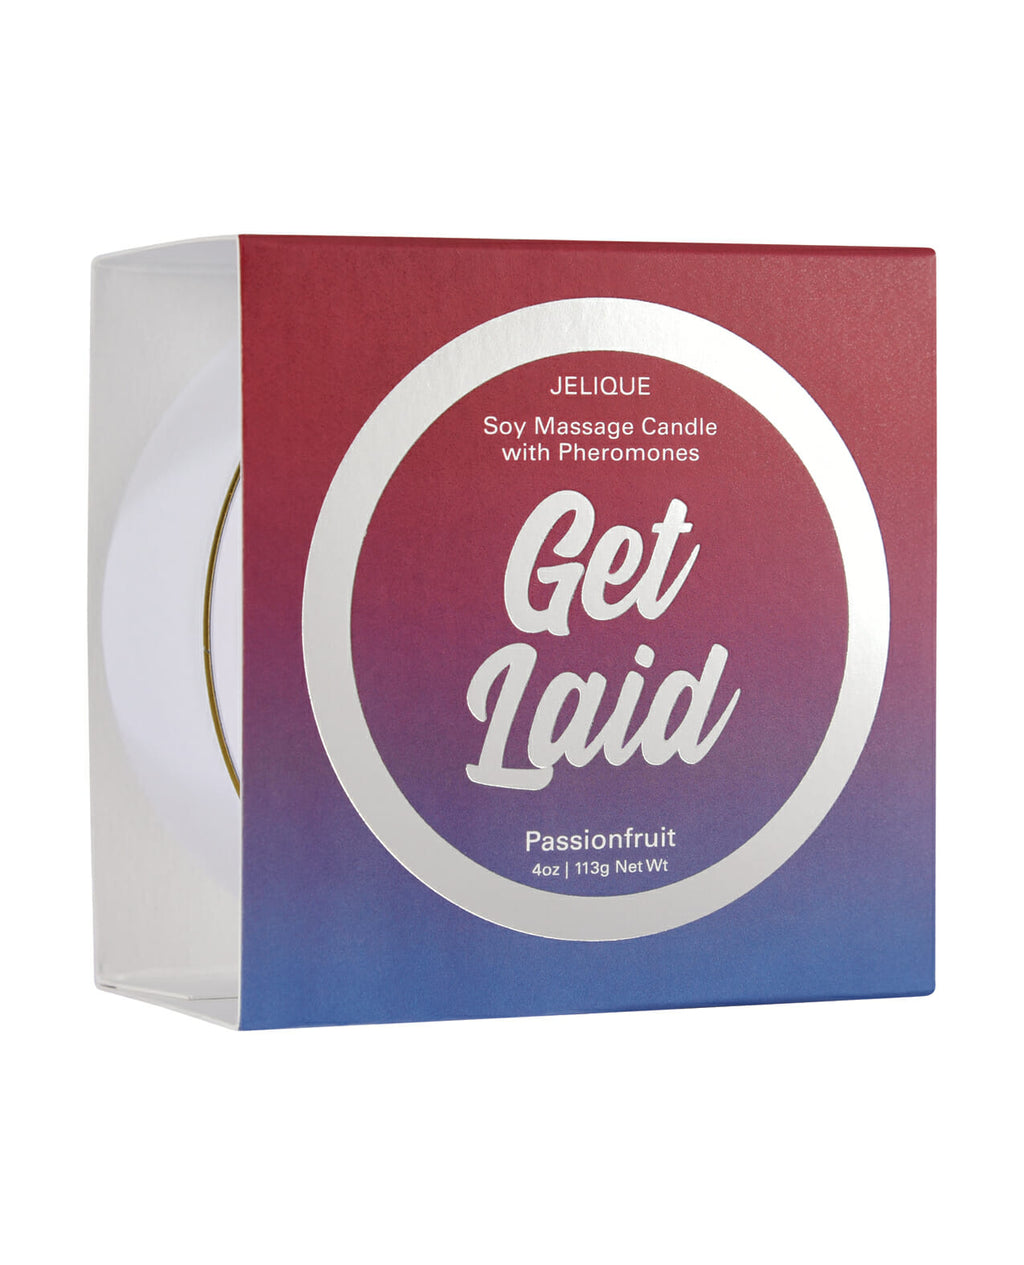 Jelique Get Laid Passion Fruit Massage Candle – 4 oz